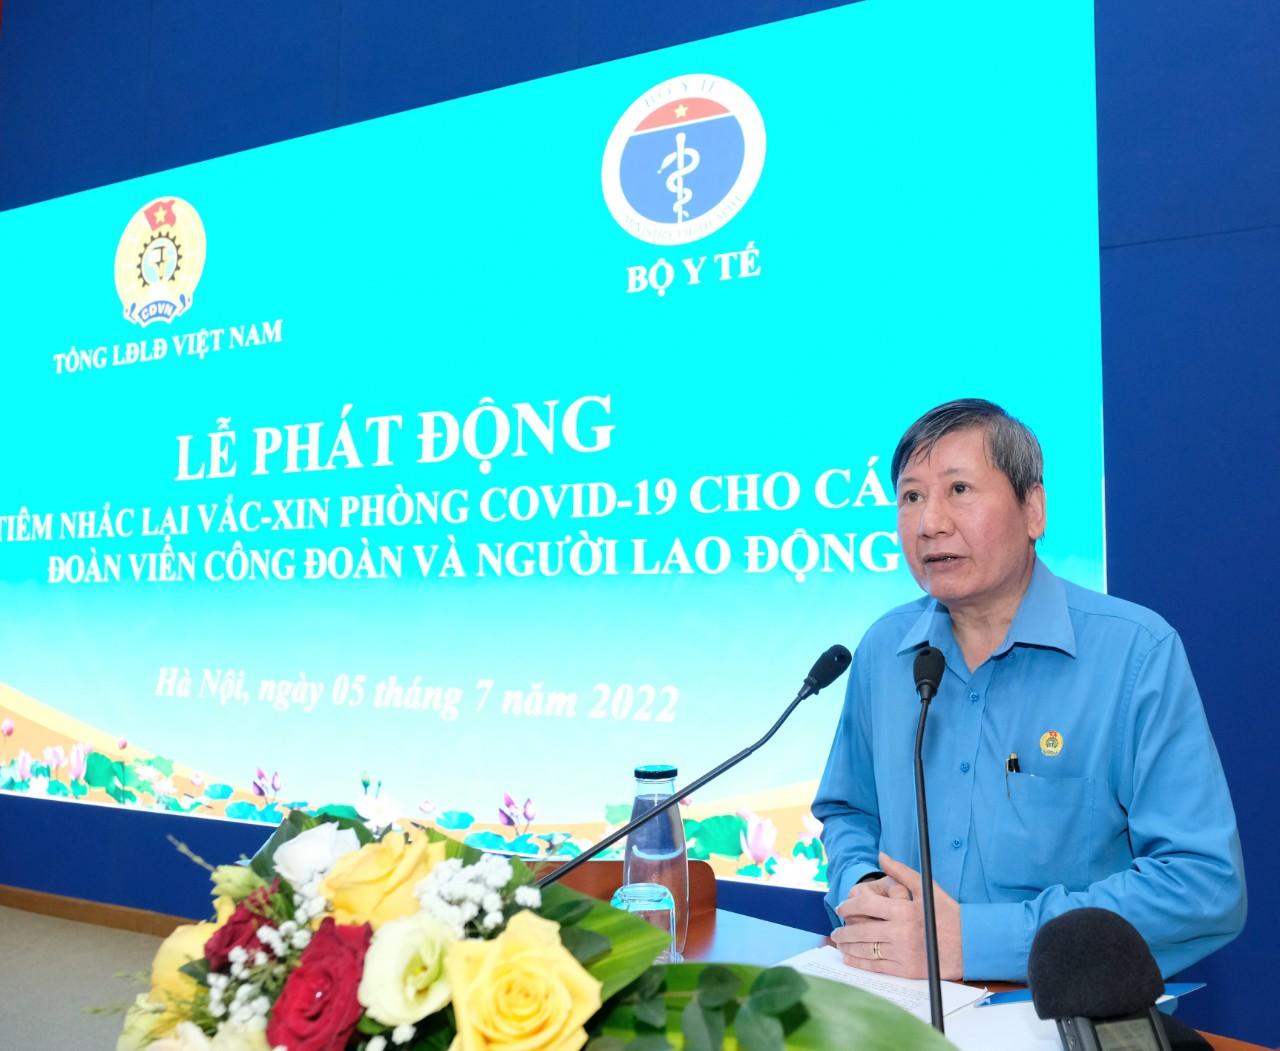 Thứ trưởng Bộ Y tế cùng hơn 200 người tiêm vaccine COVID-19 tại lễ phát động tiêm mũi 3 và 4 - Ảnh 4.